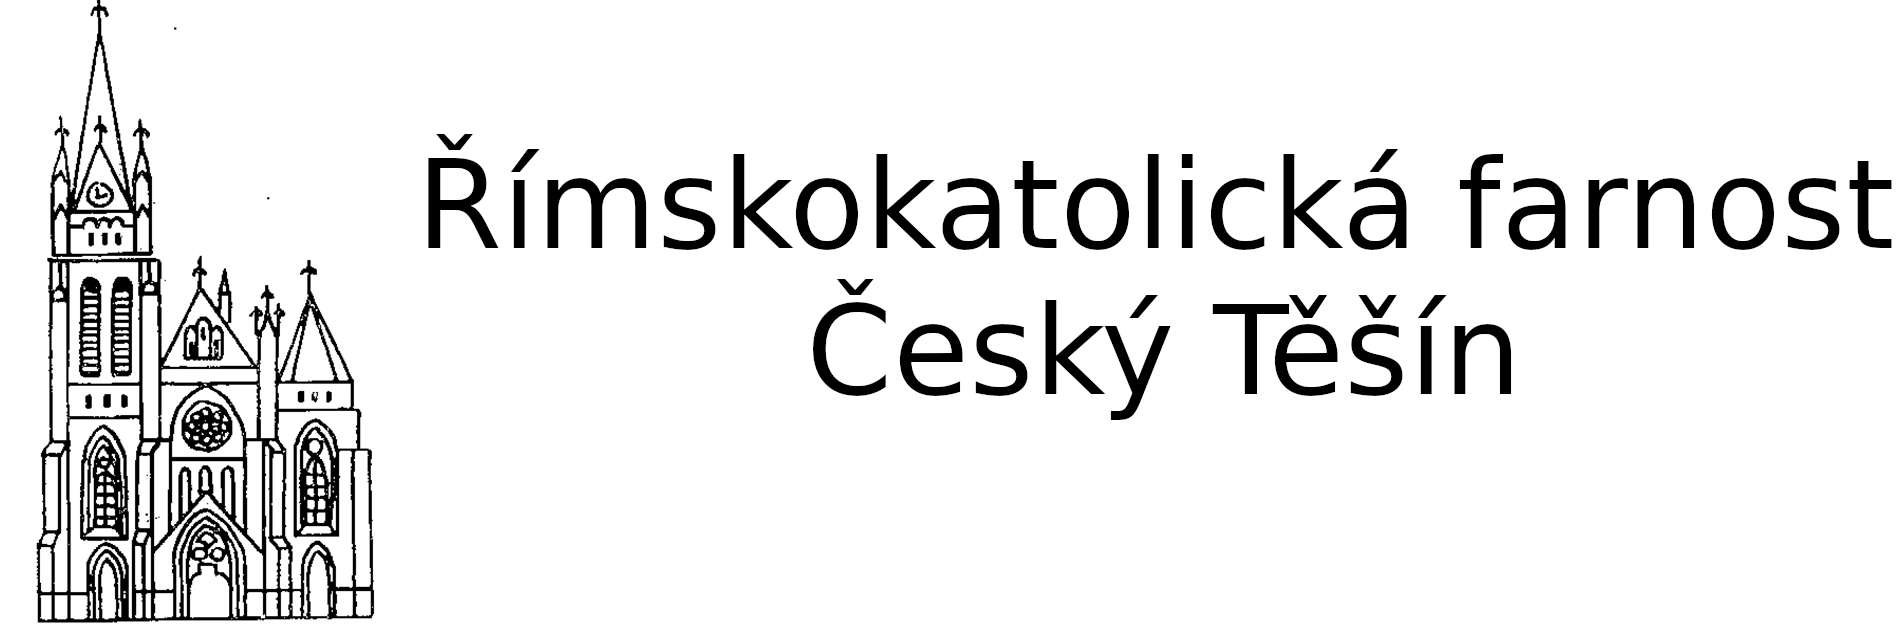 Logo kontakt - Římskokatolická farnost Český Těšín